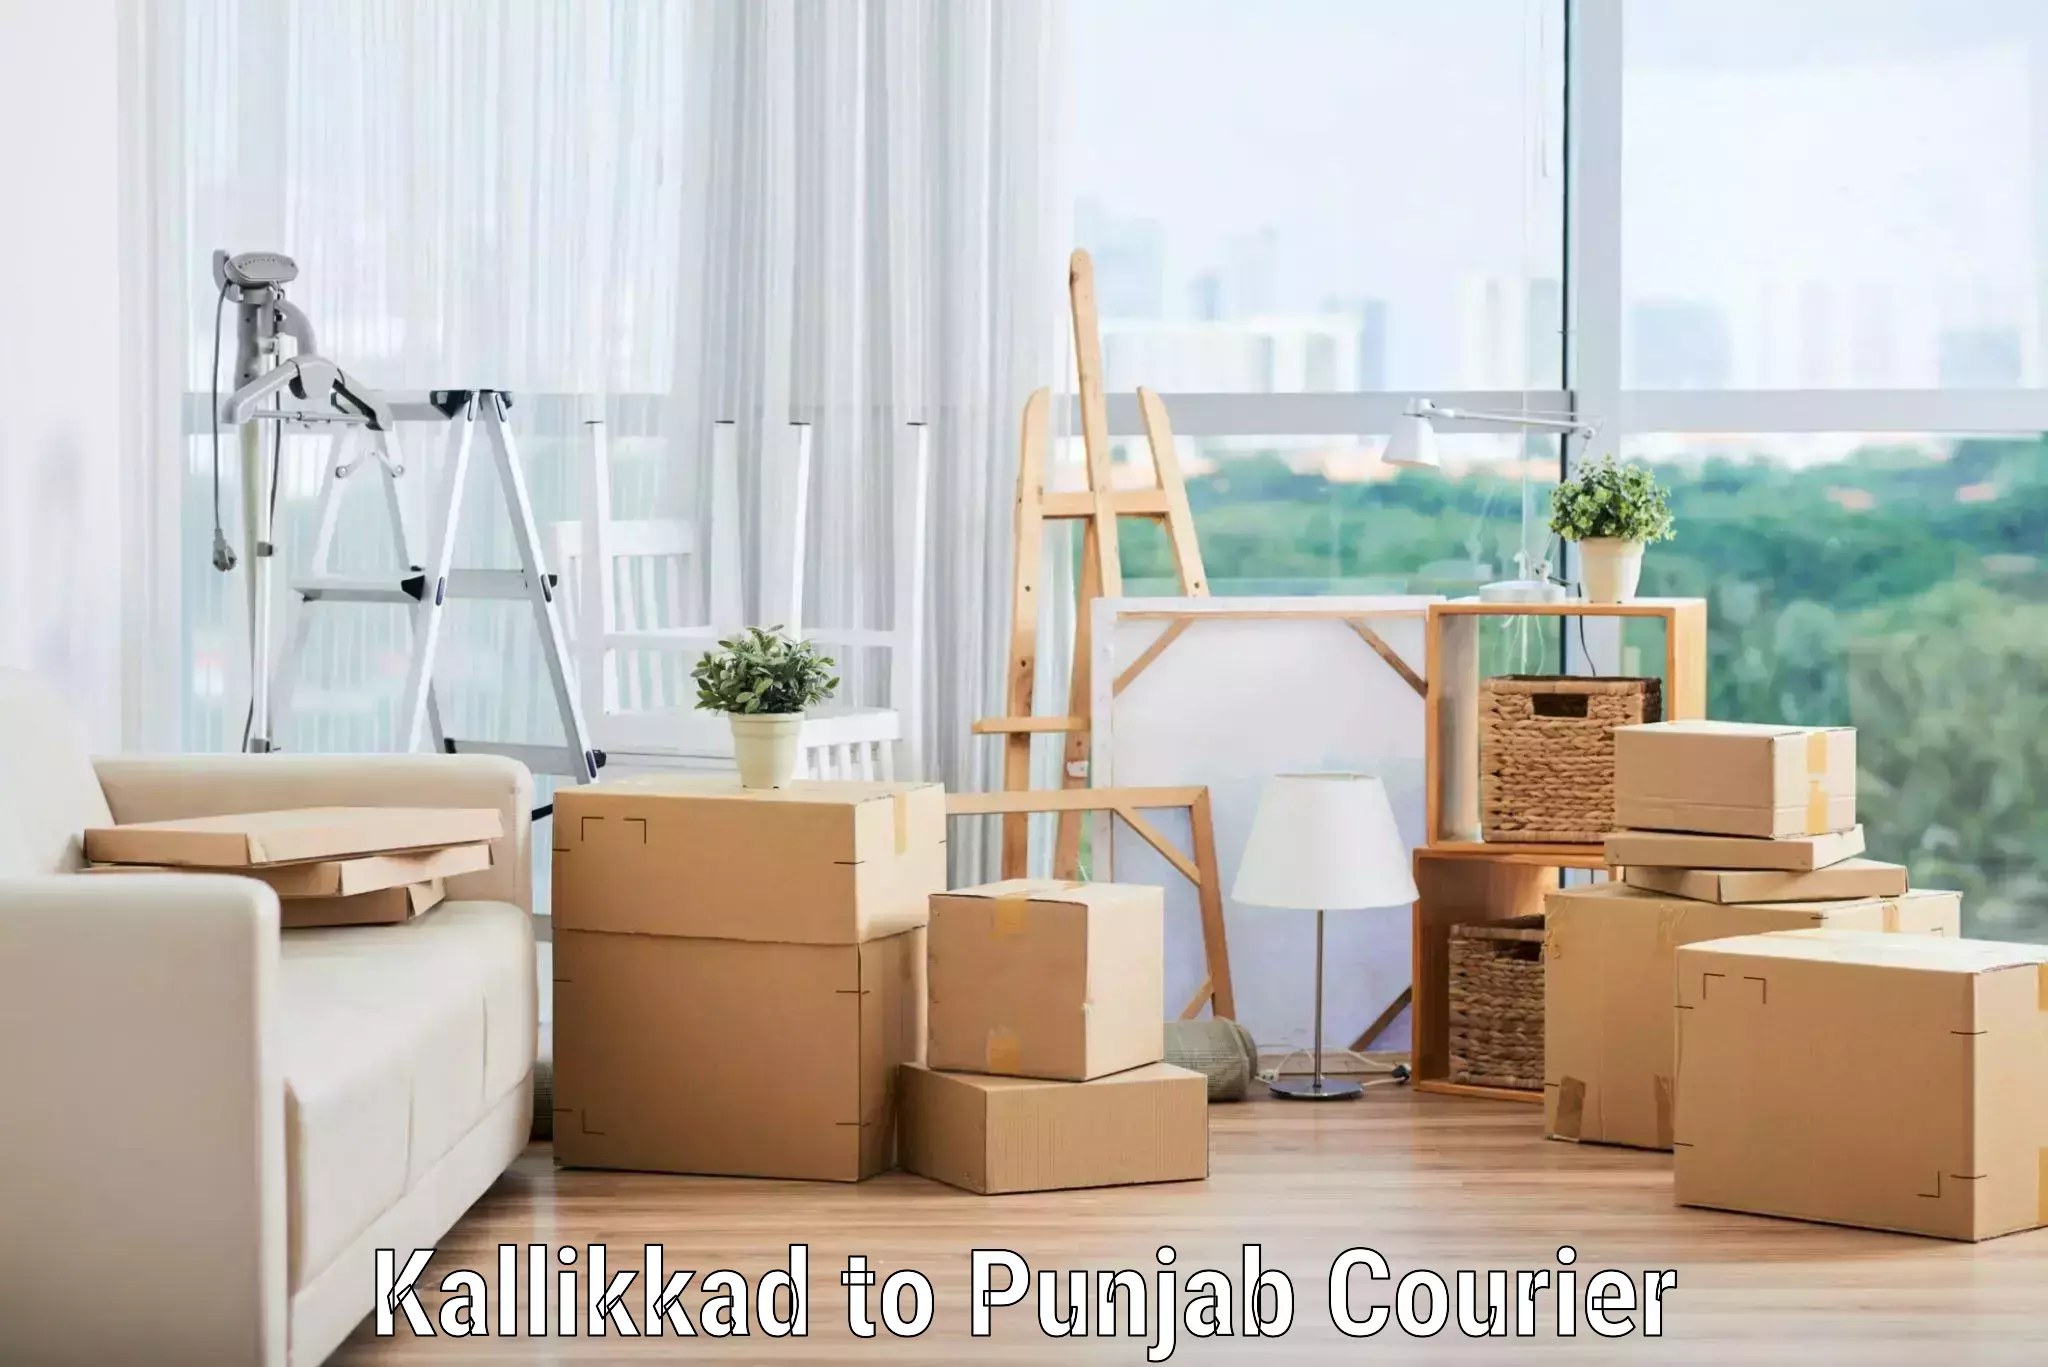 Furniture transport experts Kallikkad to Punjab